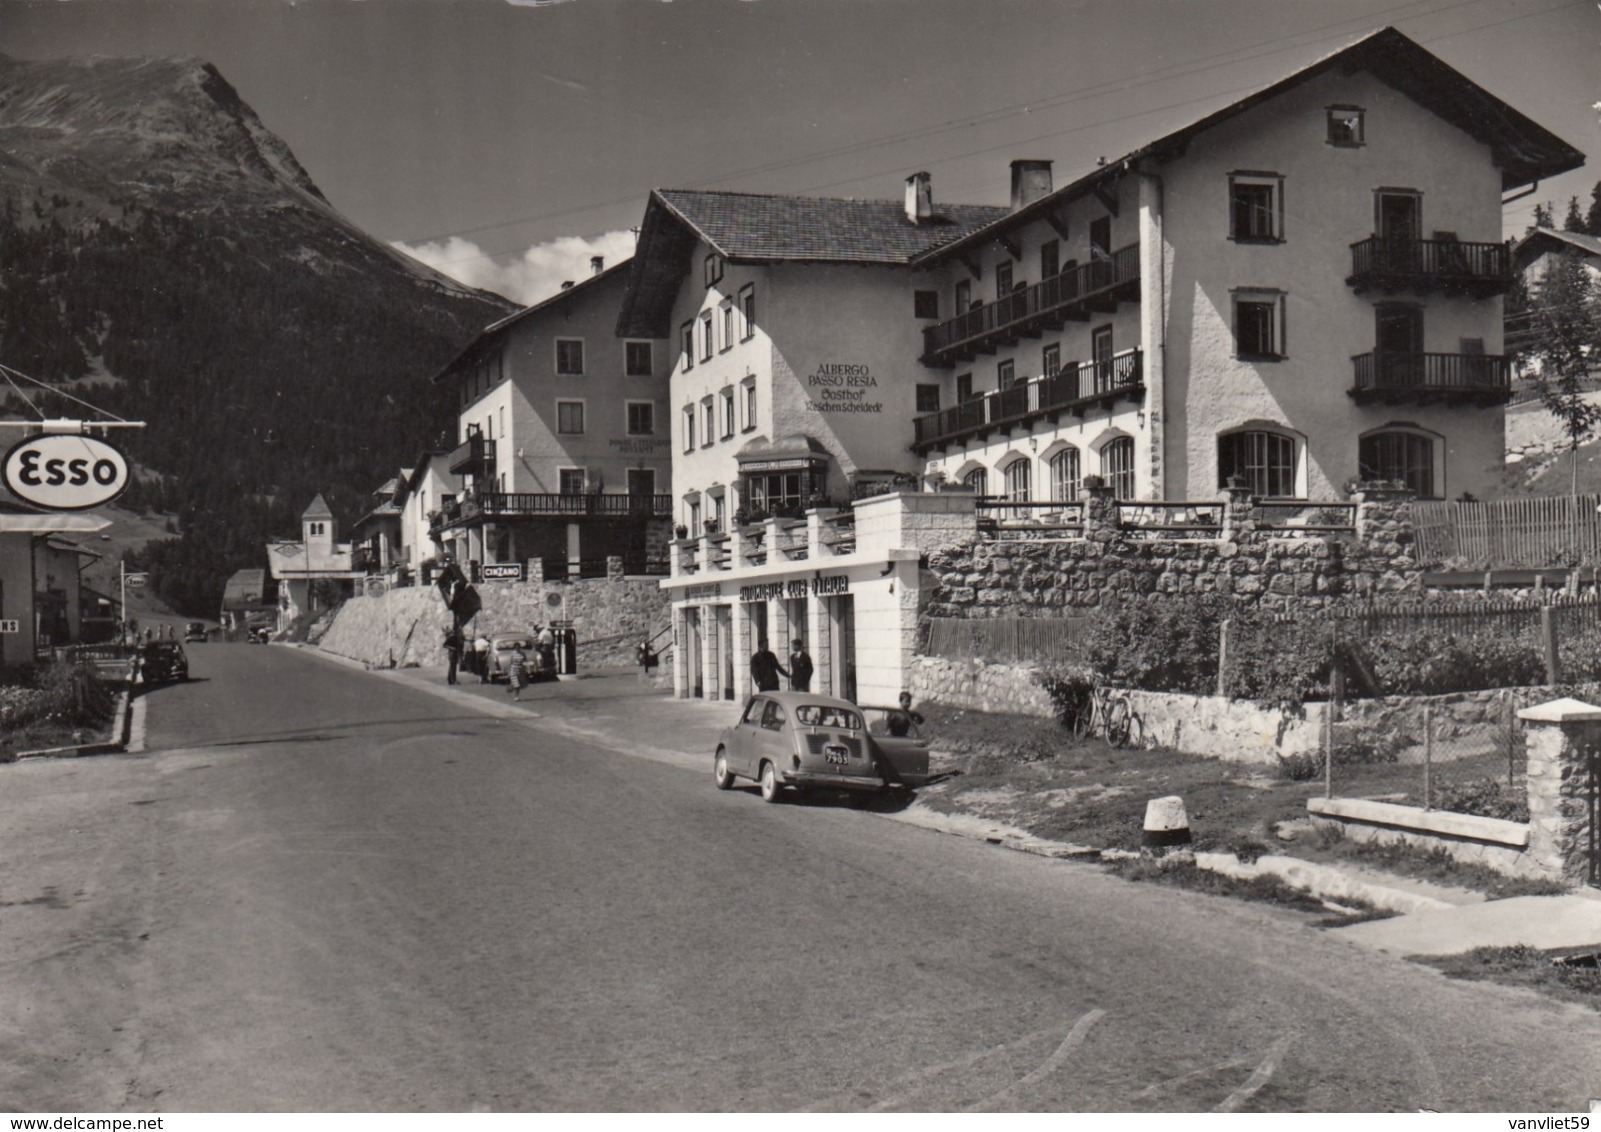 RESIA NUOVA-BOZEN-BOLZANO-ALBERGO=PASSO RESIA=CARTOLINA VERA FOTOGRAFIA -VIAGGIATA IL 4-9-1962 - Bolzano